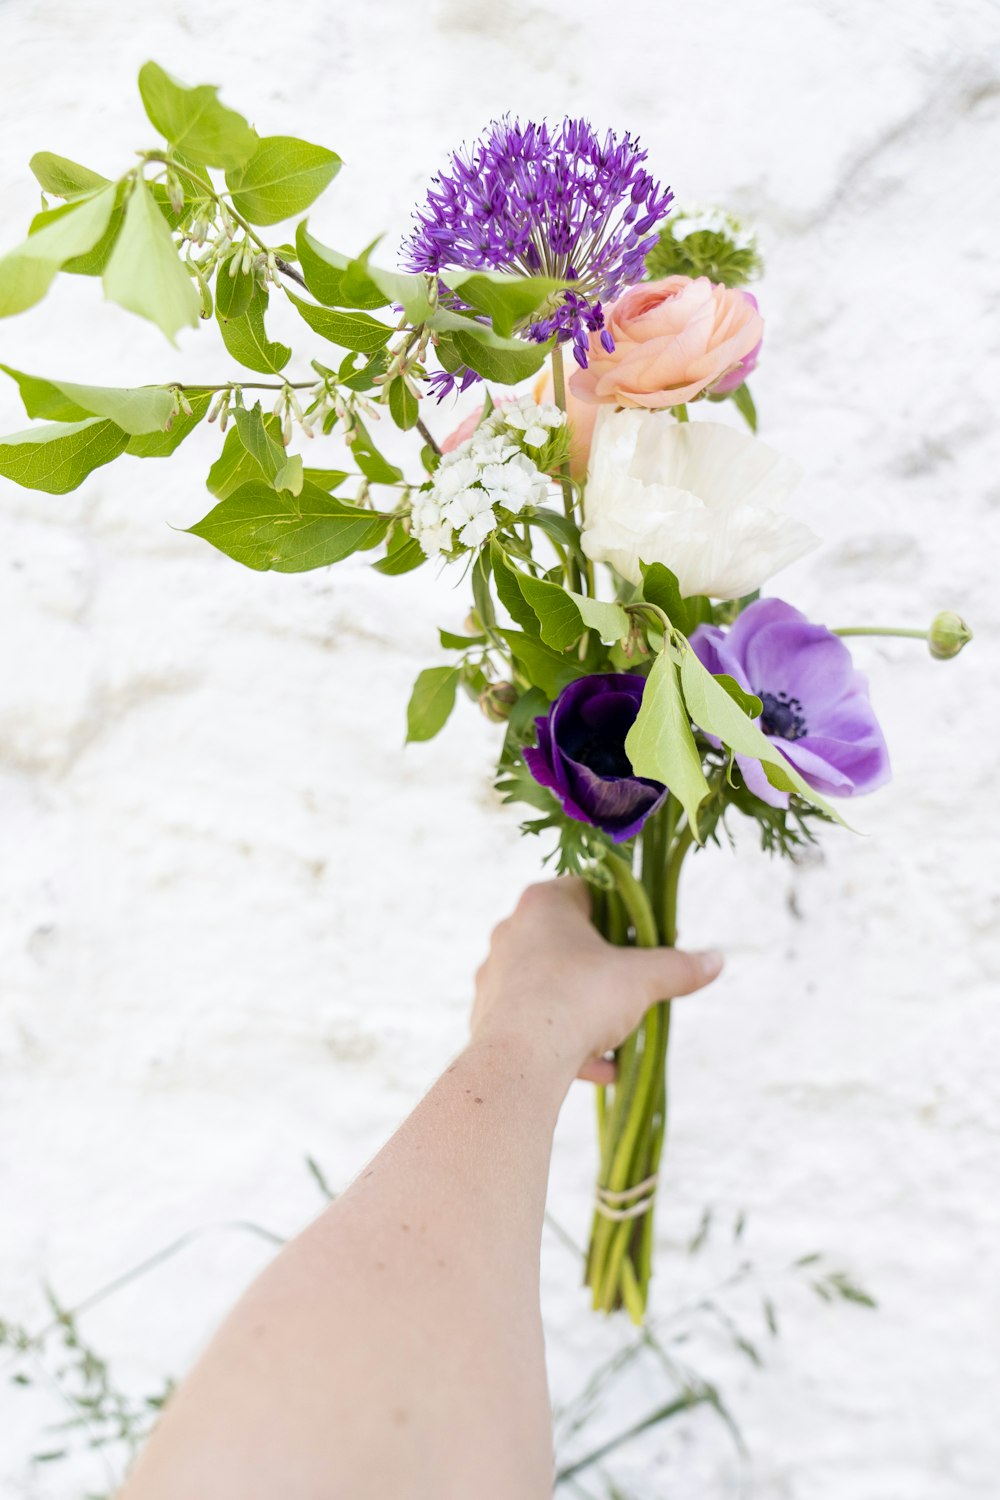 personne tenant des fleurs violettes et blanches